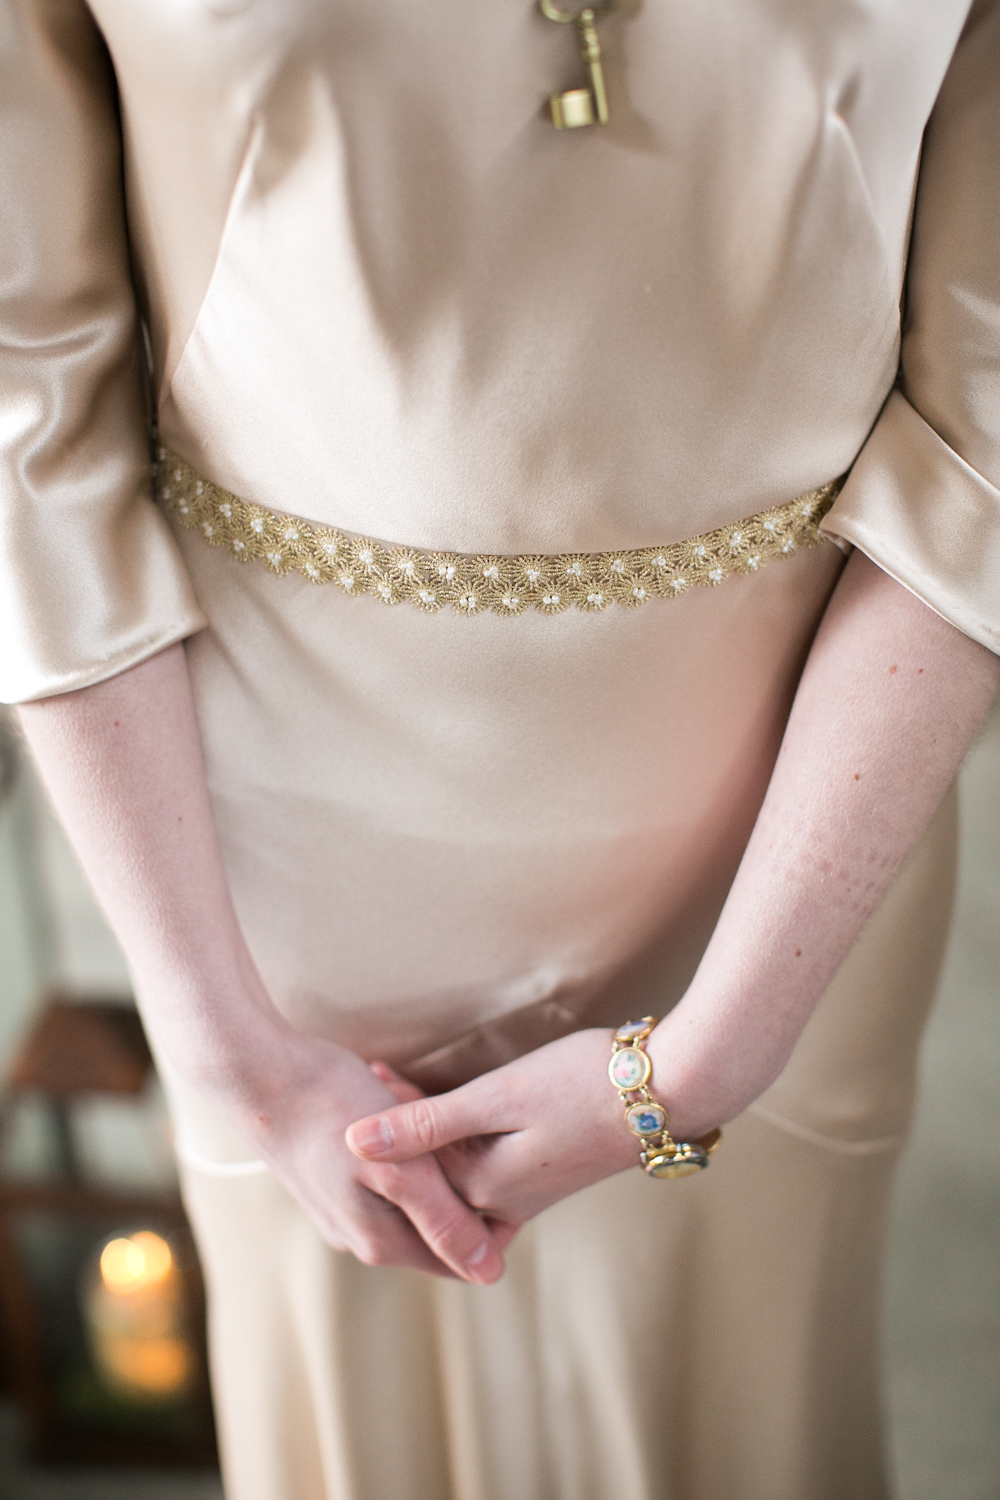 blush dress vintage style gold belt hushed commotion